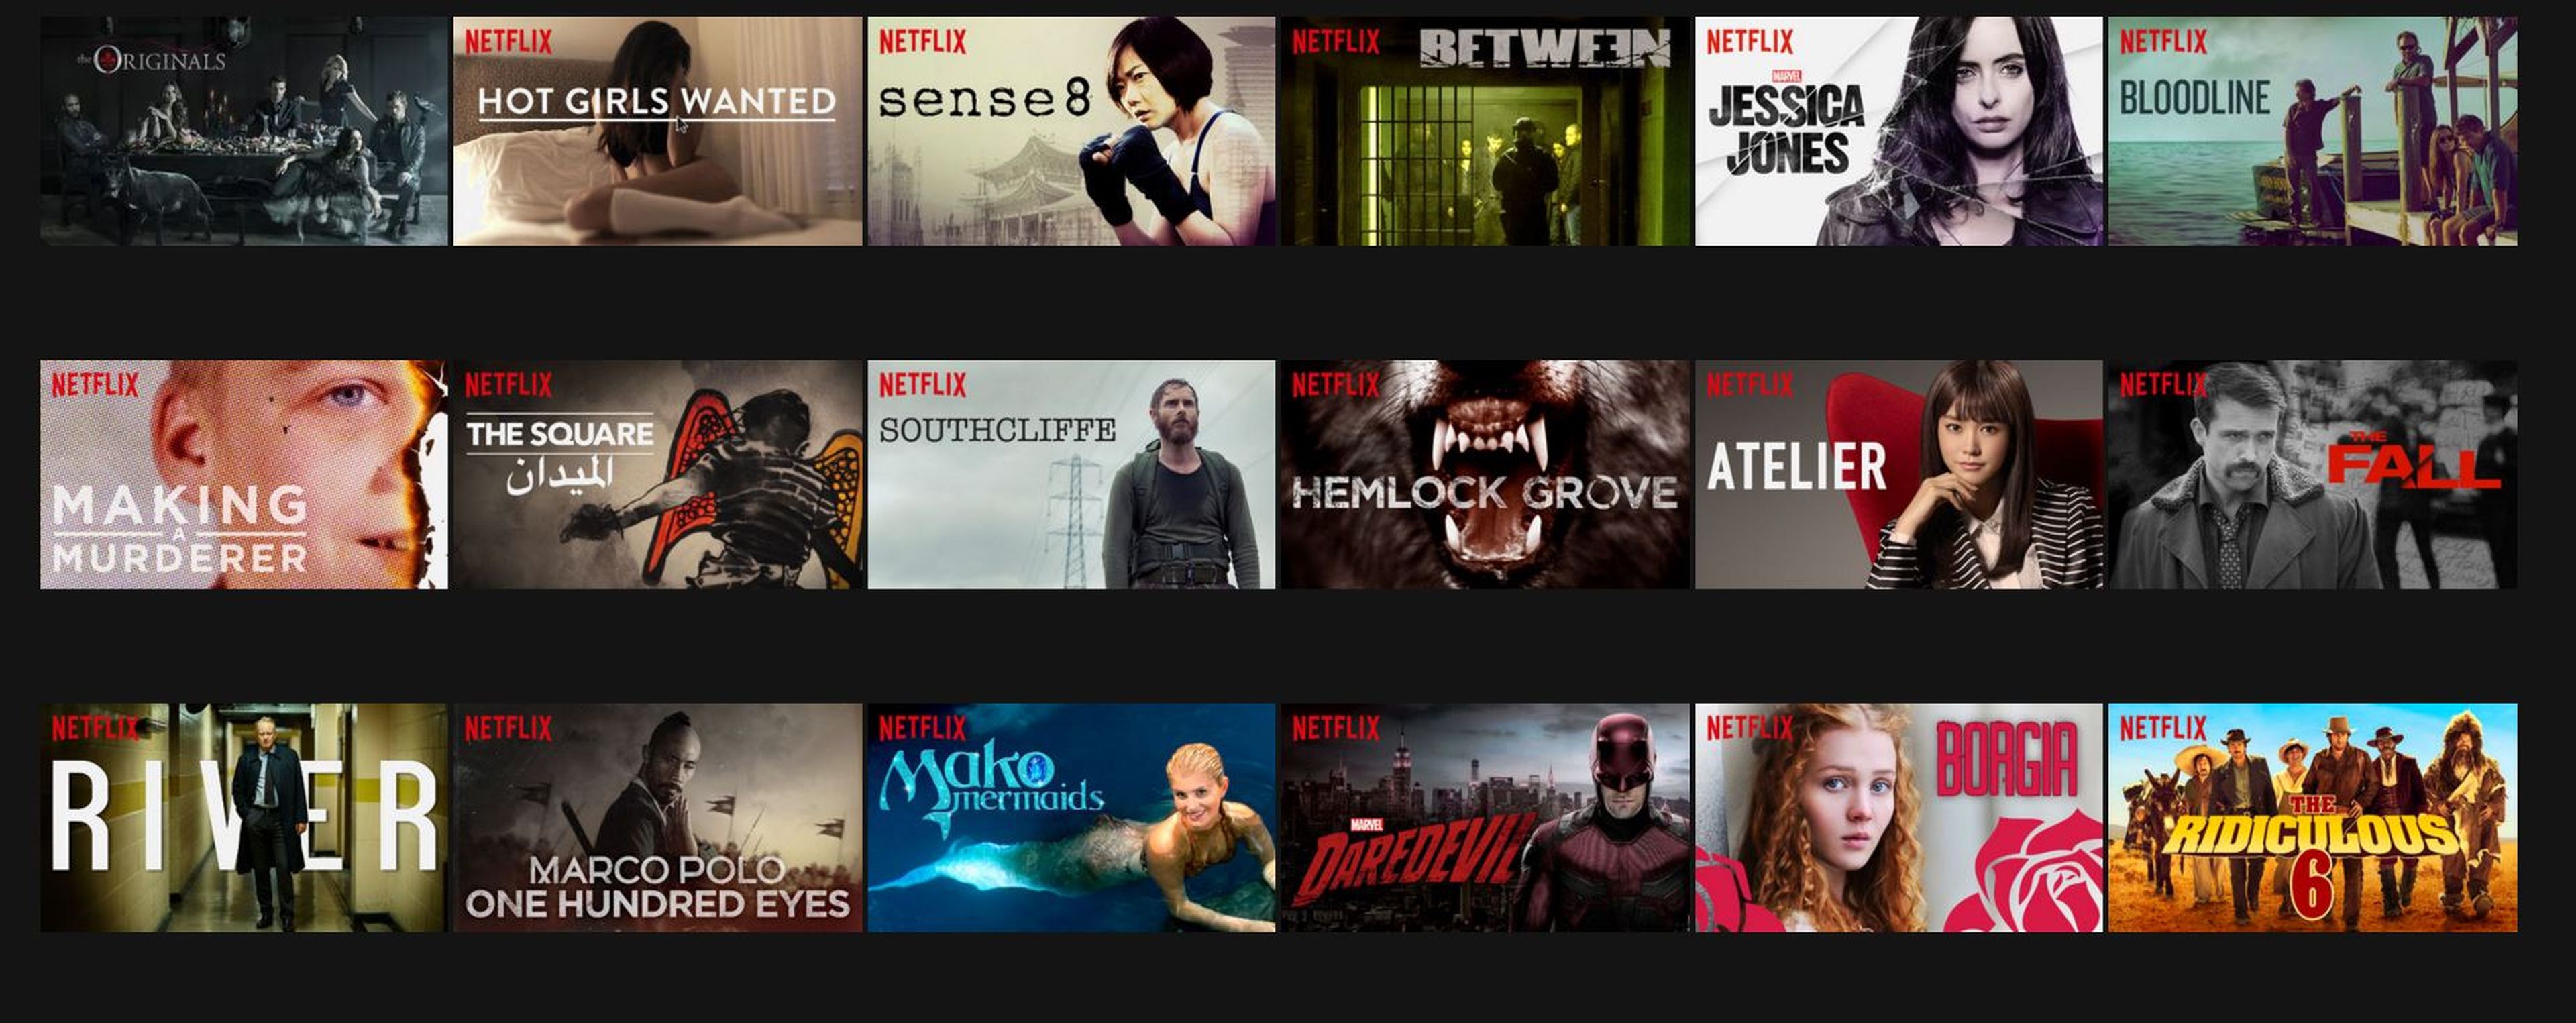 Netflix, series originales